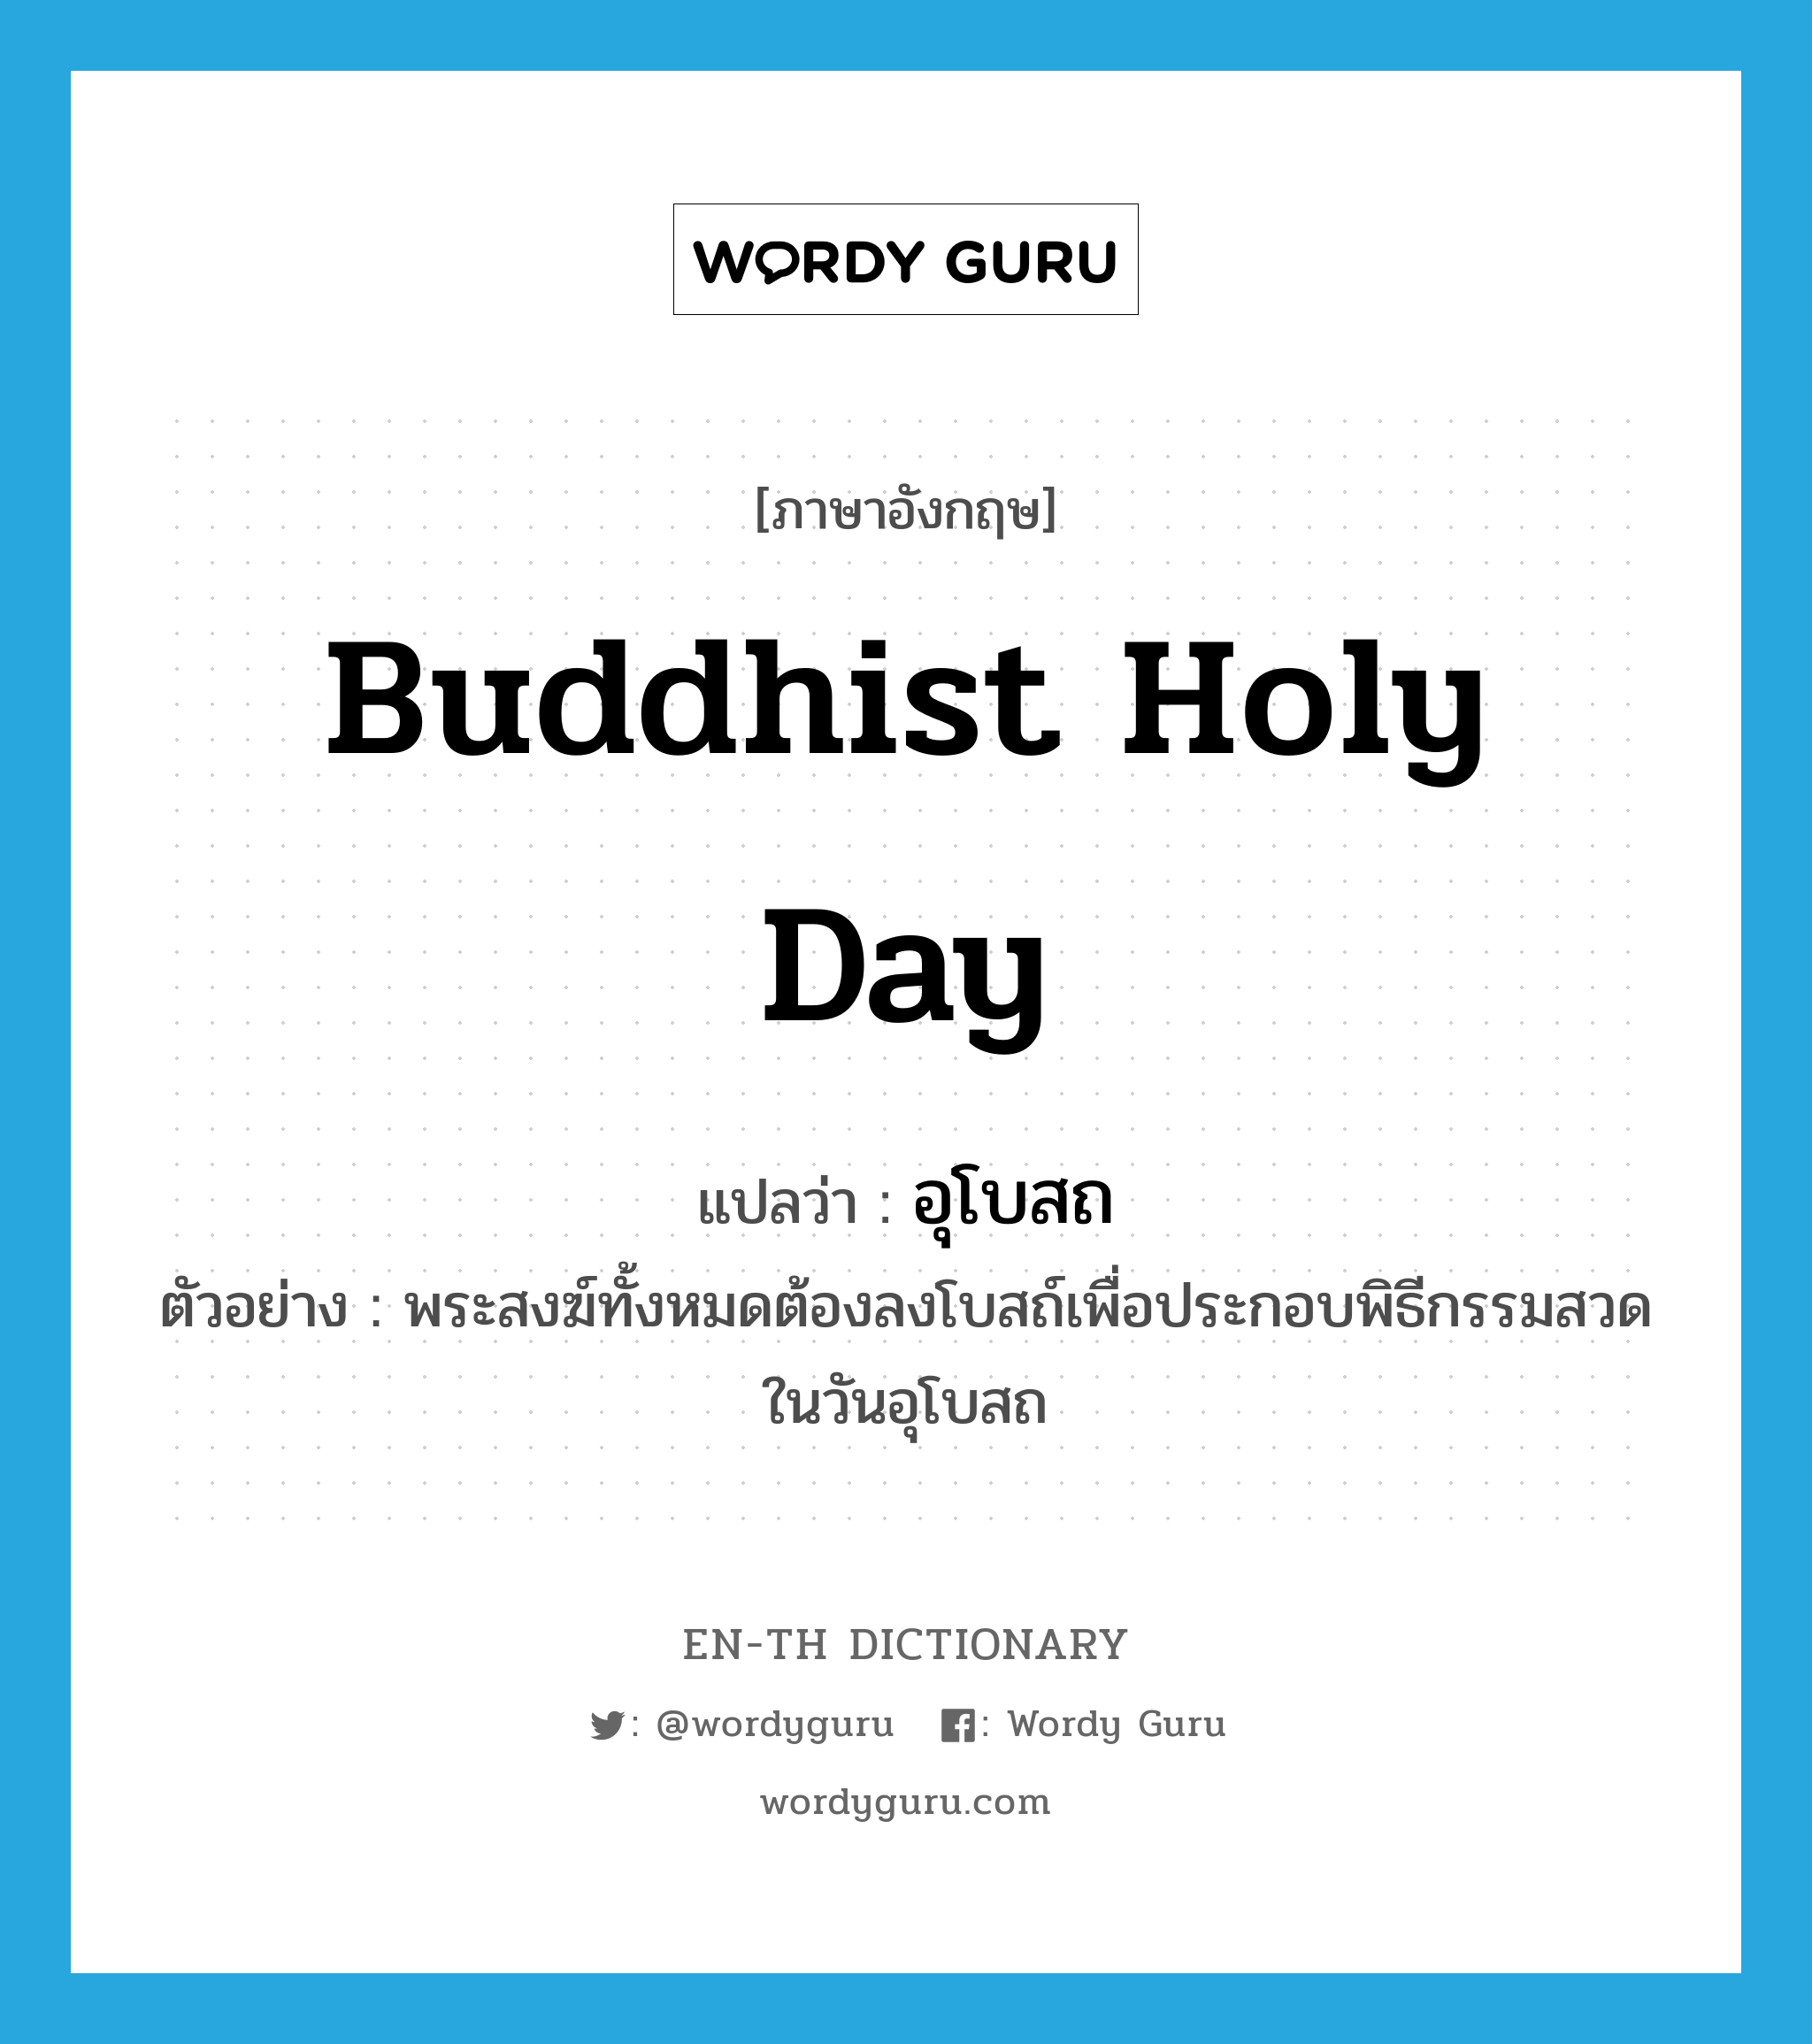 Buddhist holy day แปลว่า?, คำศัพท์ภาษาอังกฤษ Buddhist holy day แปลว่า อุโบสถ ประเภท N ตัวอย่าง พระสงฆ์ทั้งหมดต้องลงโบสถ์เพื่อประกอบพิธีกรรมสวดในวันอุโบสถ หมวด N